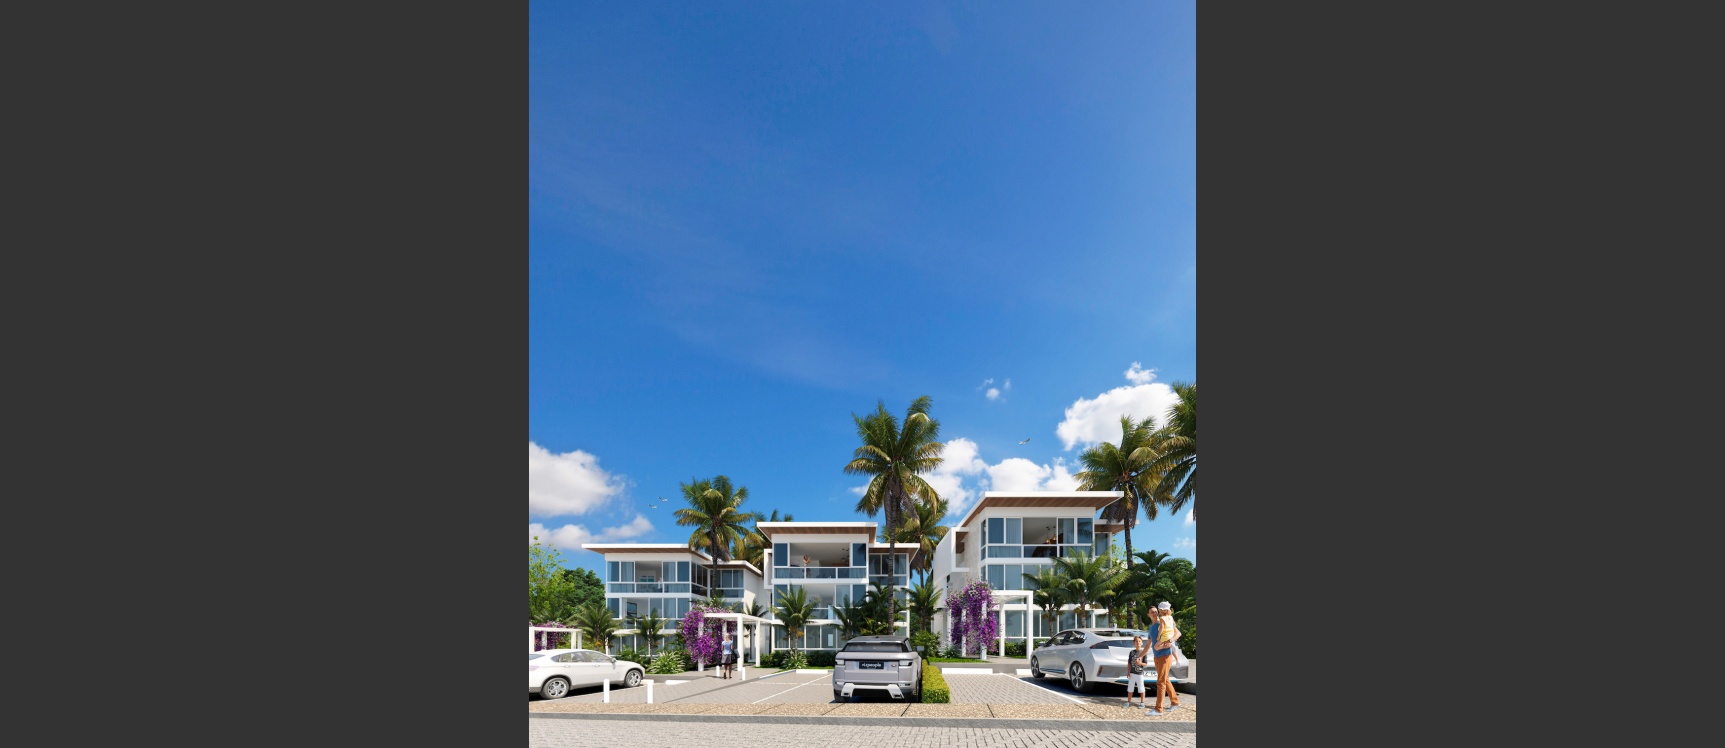 GeoBienes - Departamento 2 Dormitorios - Vista 5 - Planta Baja - Plusvalia Guayaquil Casas de venta y alquiler Inmobiliaria Ecuador